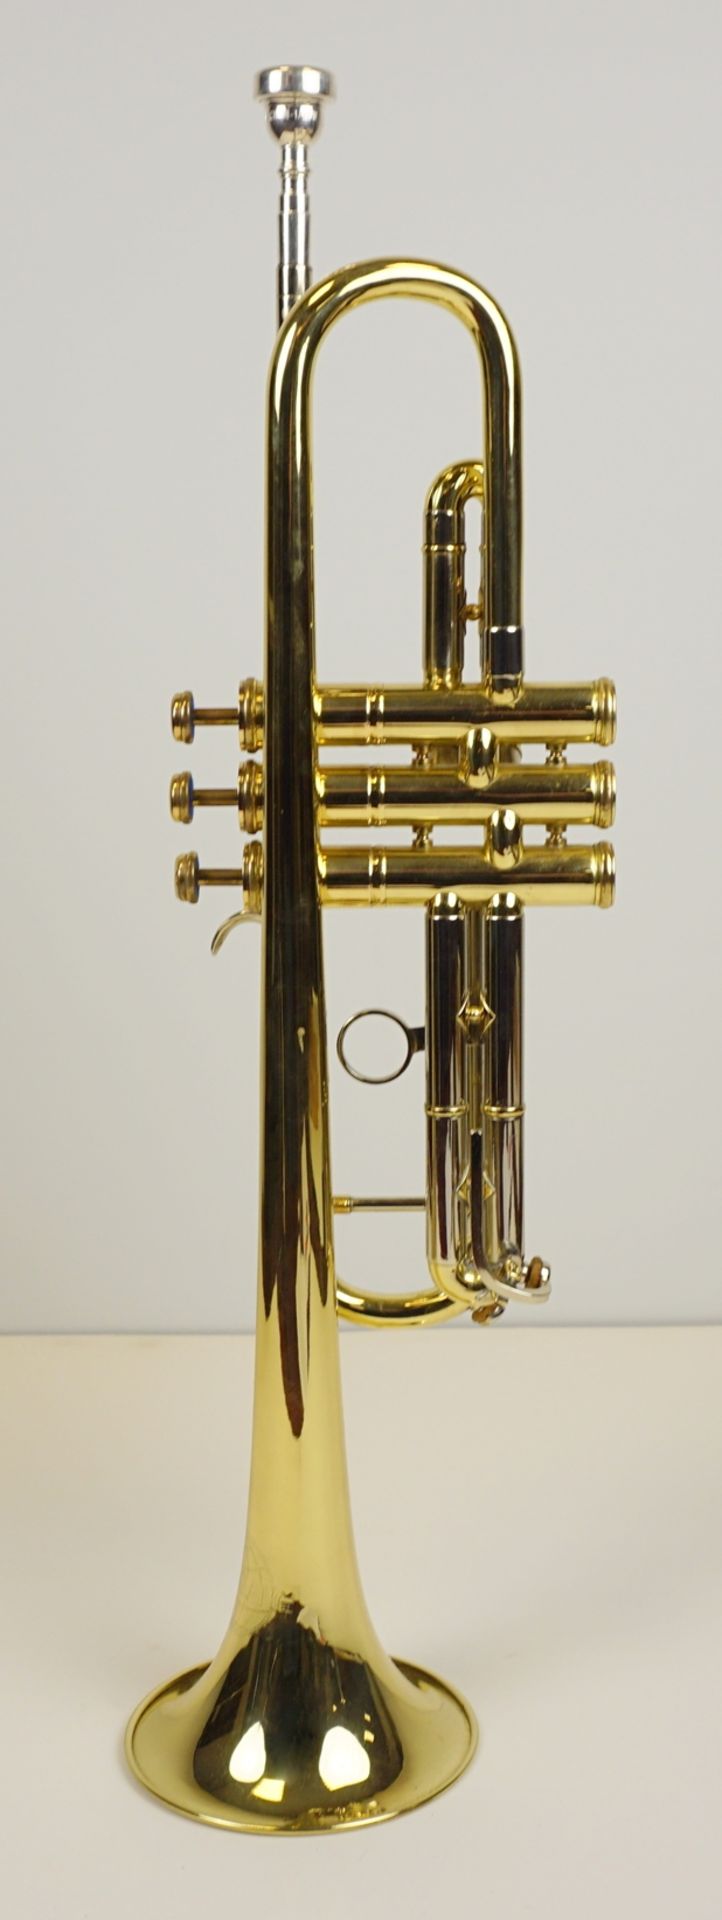 Trompete, Weltklang, Messing, Länge ca. 55cm - Bild 3 aus 5